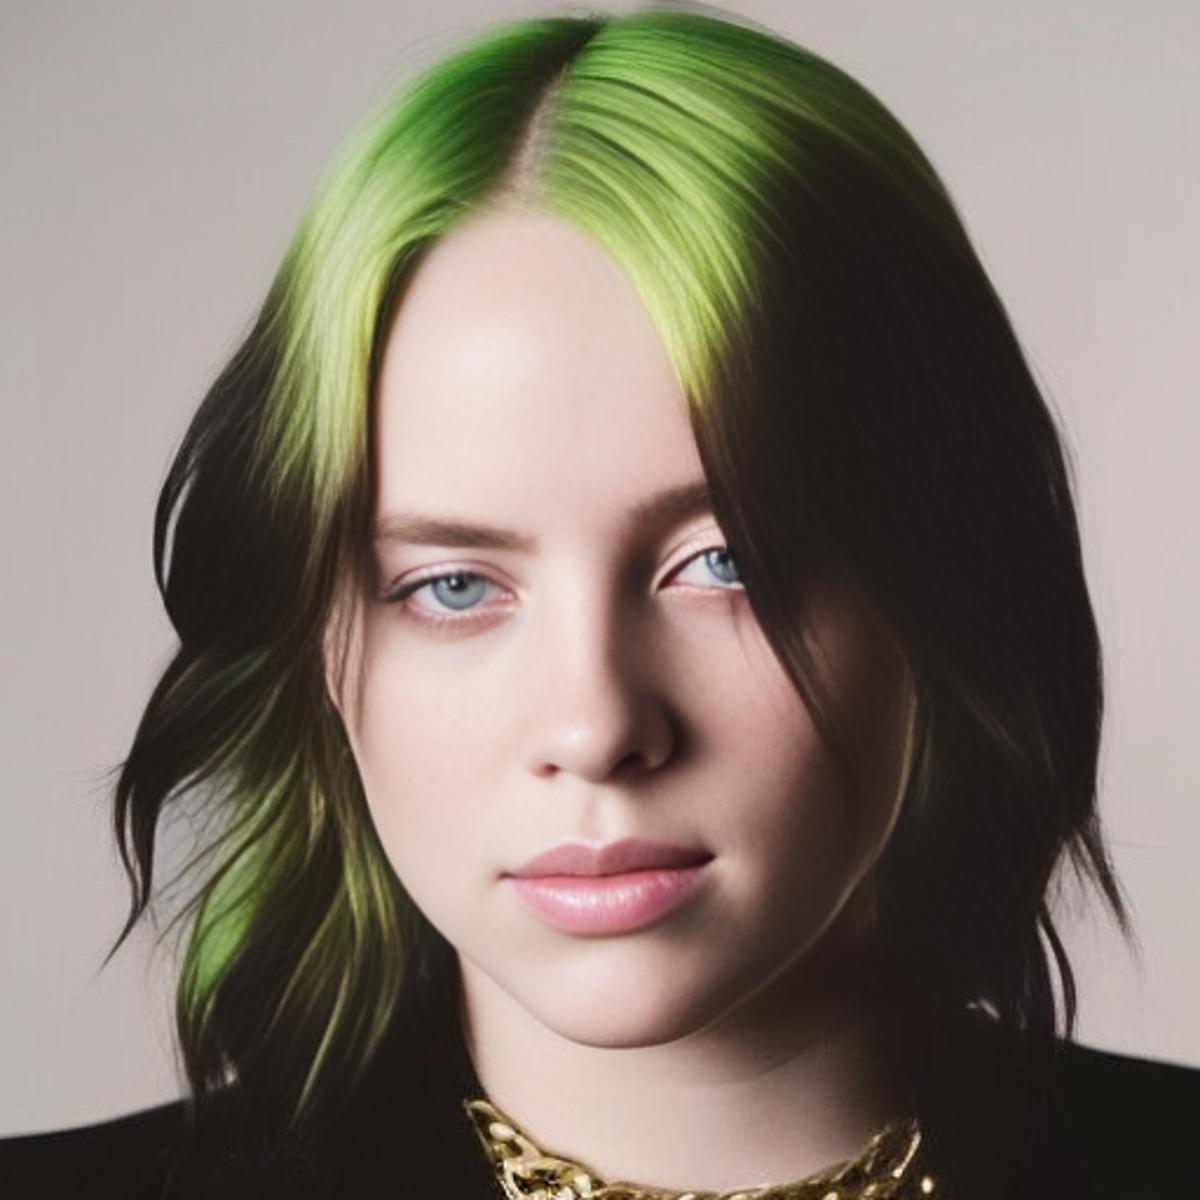 Billie Eilish blonde model - Billie Eilish versión with green hair ...